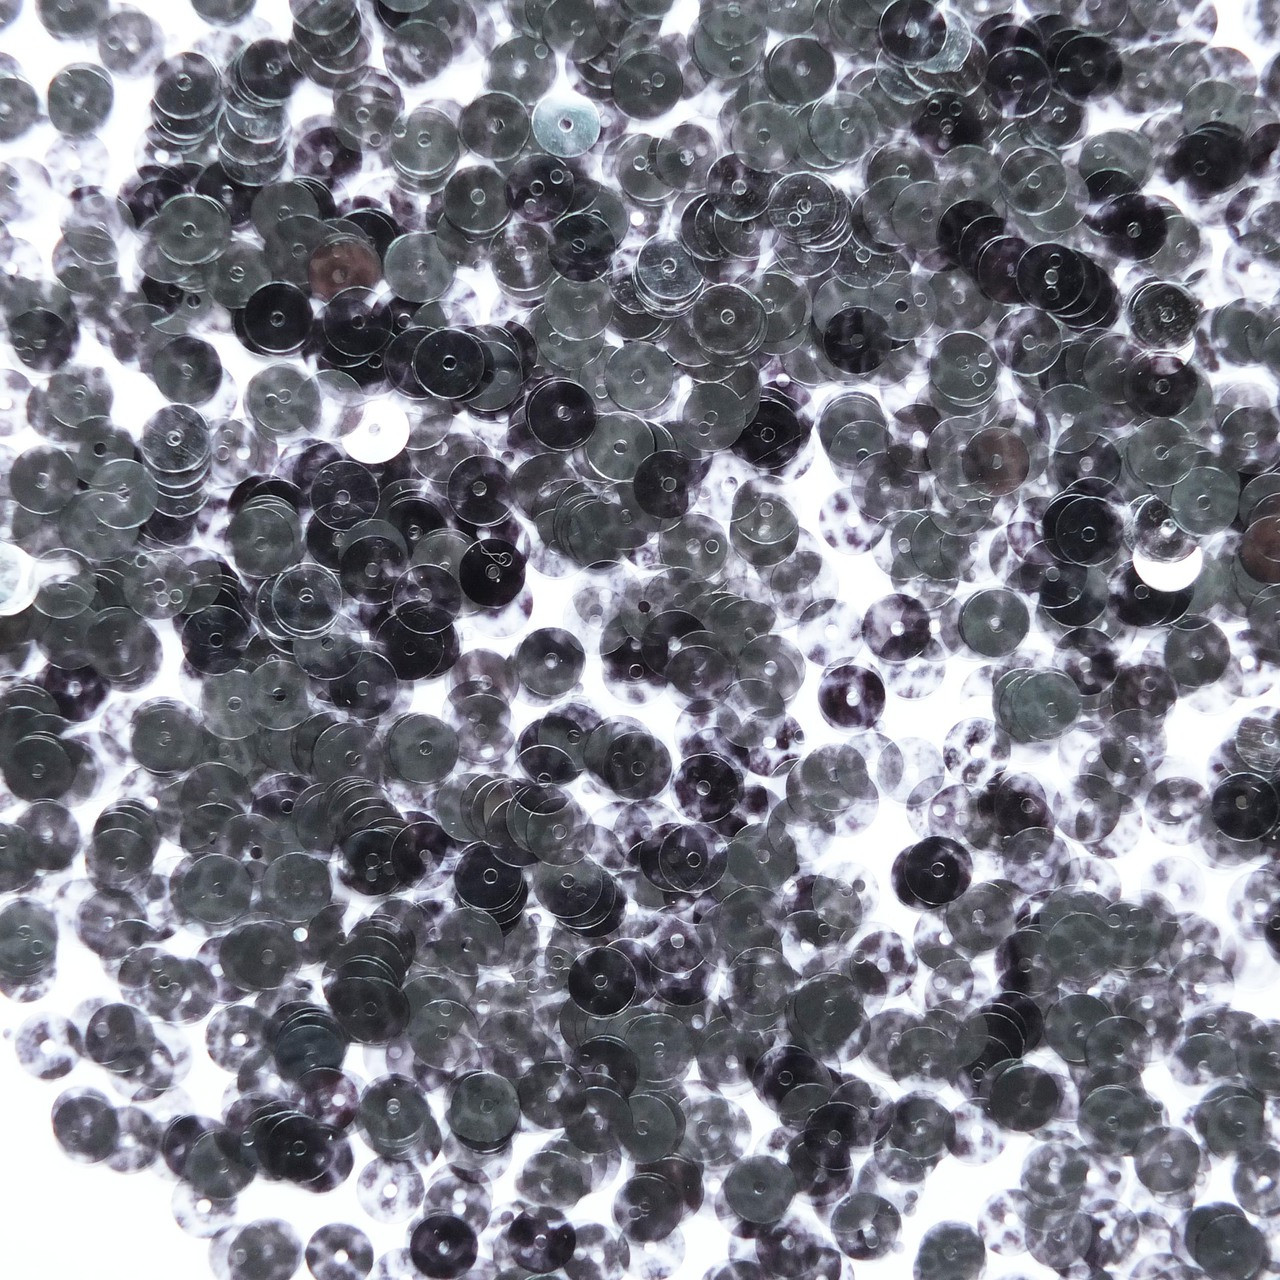 6mm Sequins Crystal Black Marbled Mottled Transparent See-Thru